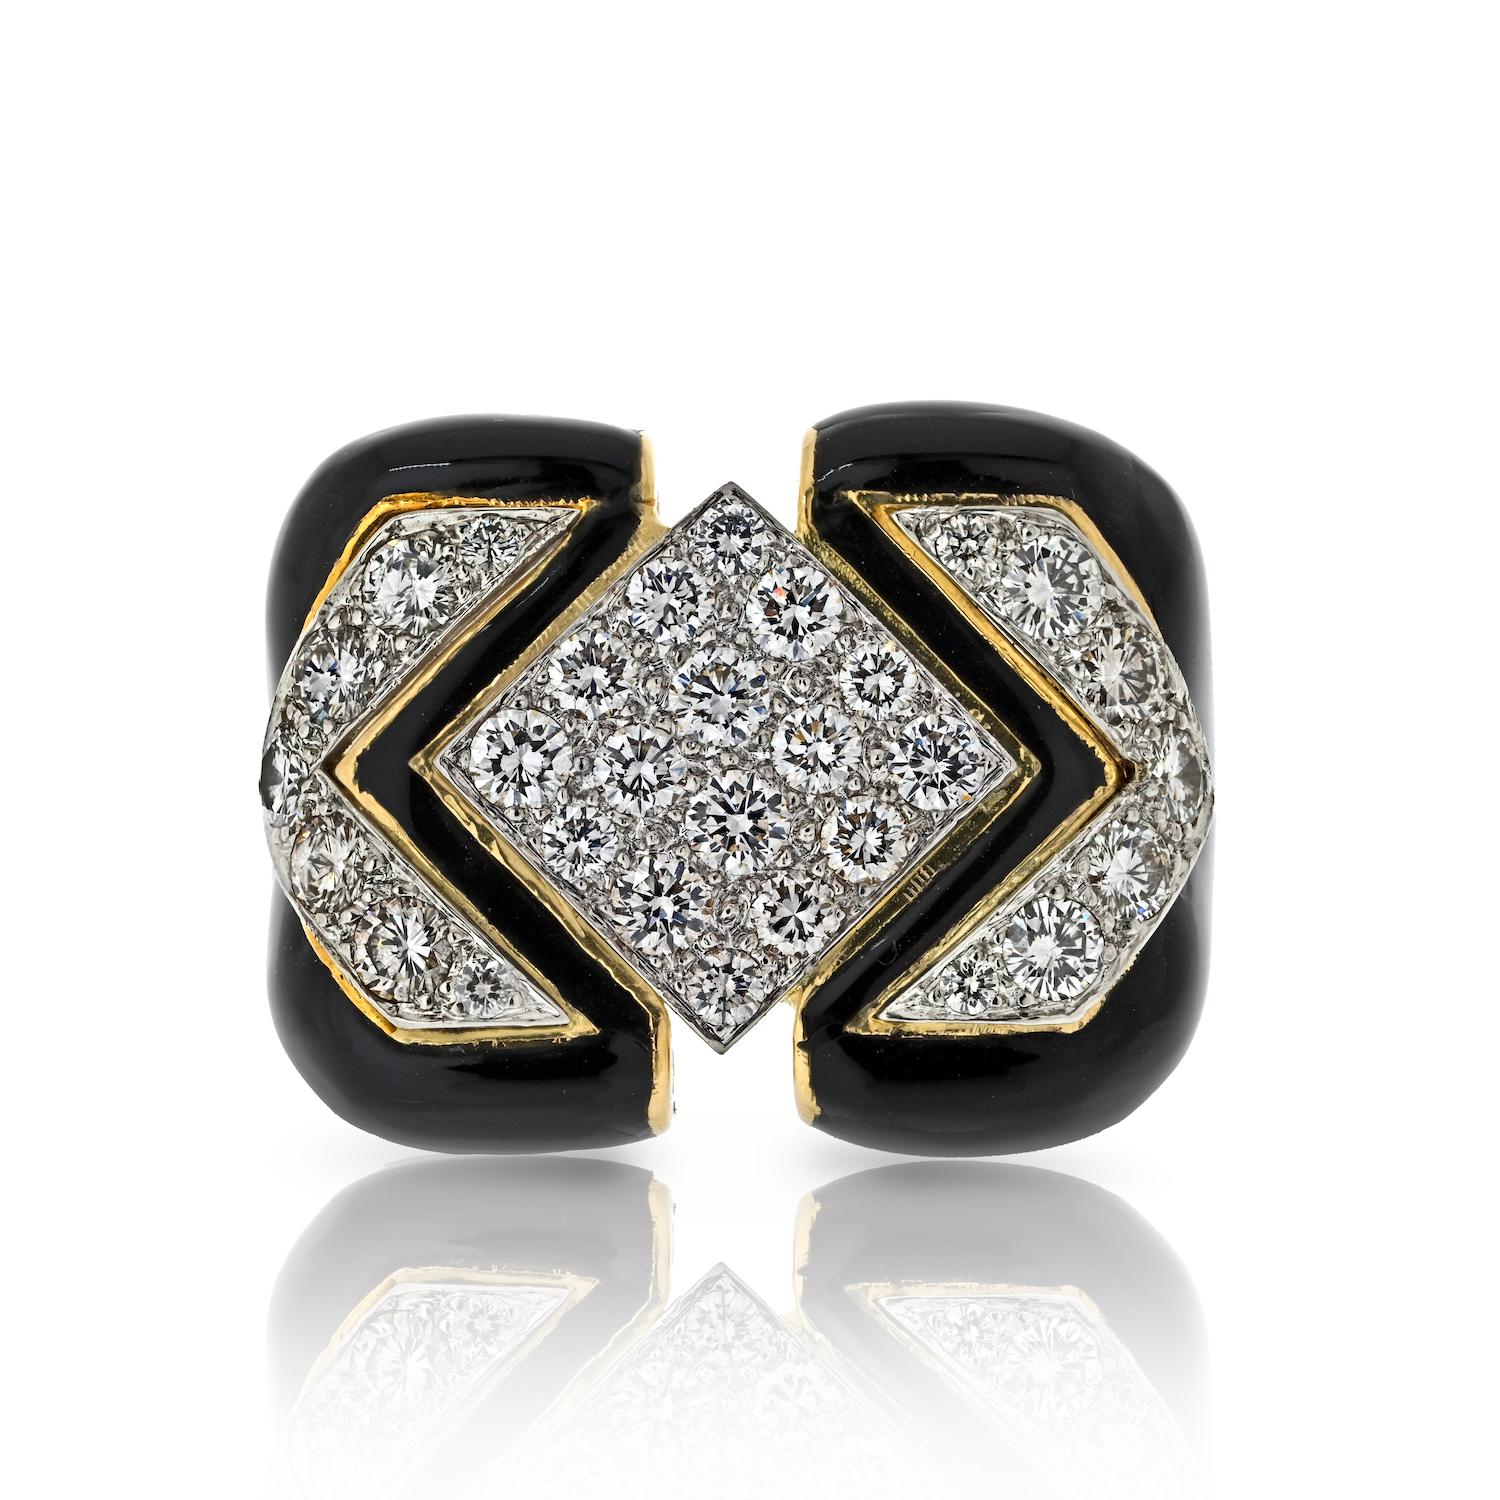 Tauchen Sie ein in die Welt des zeitlosen Glamours mit unserem Ring Vintage David Webb Manhattan Minimalism. Dieses exquisite Schmuckstück vereint Eleganz und Kühnheit. Es besticht durch seine schwarze Emaille, die von einer atemberaubenden